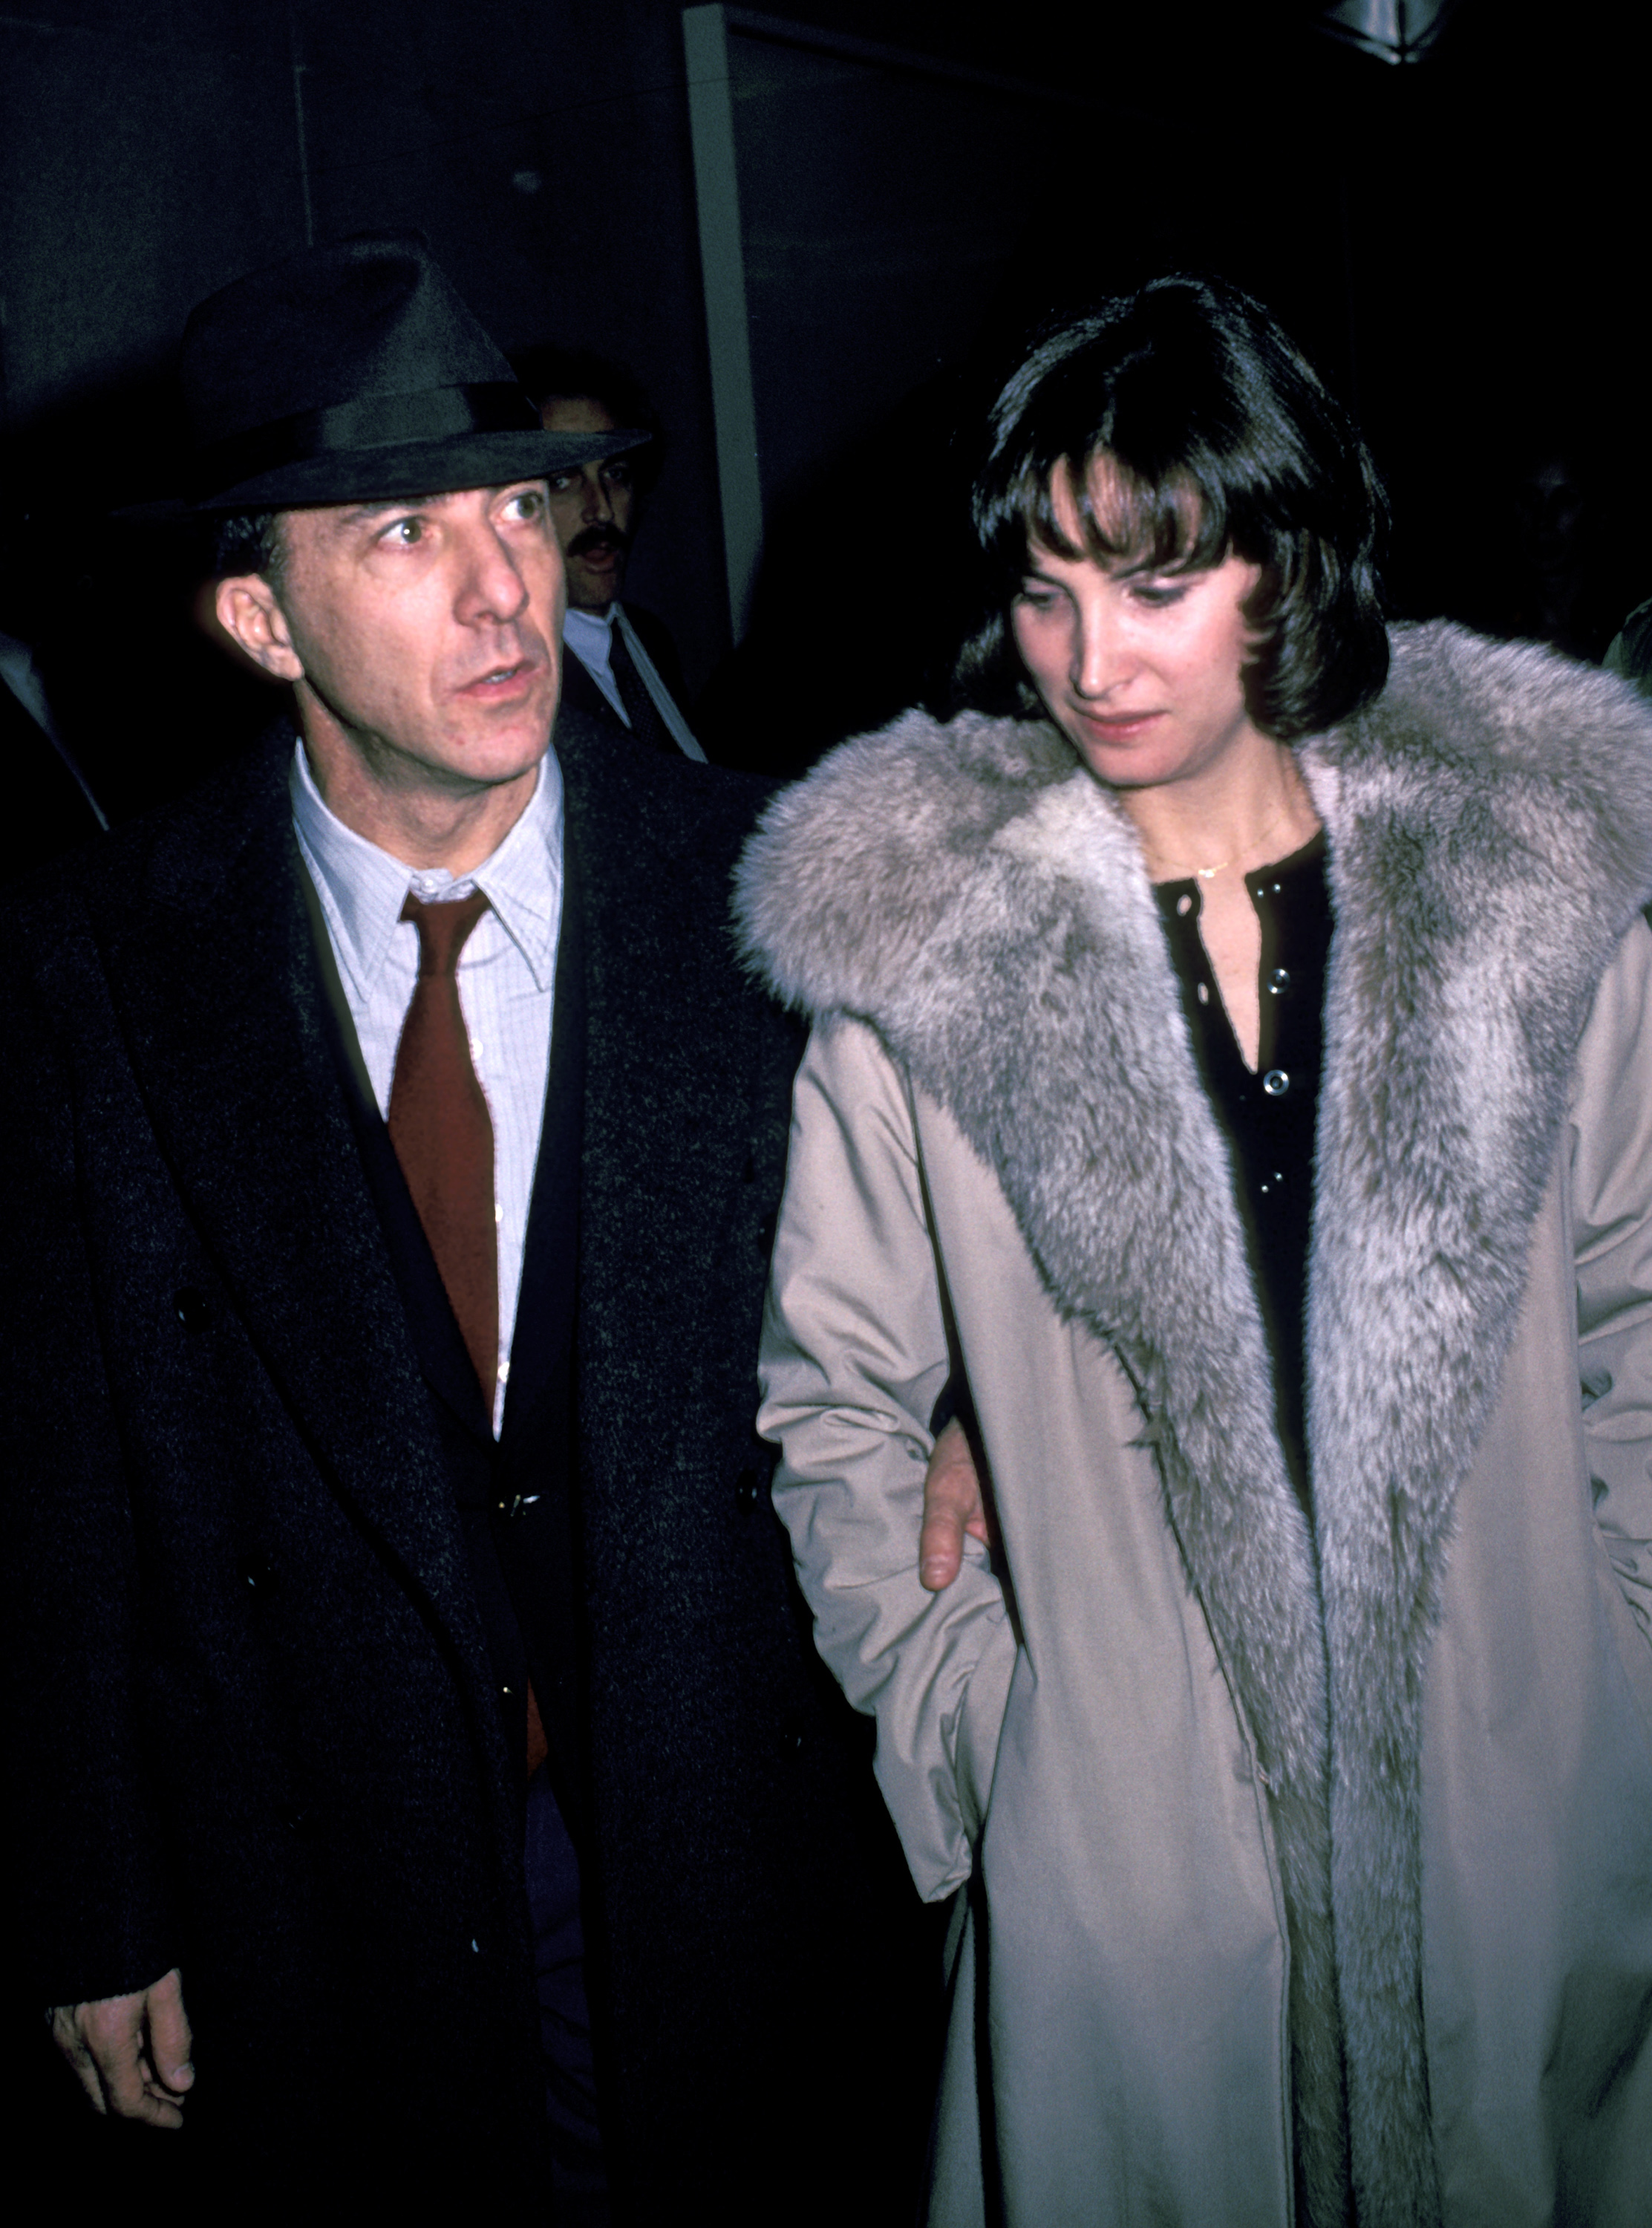 L'acteur et la femme lors de la projection de "The Falcon and The Snowman" à New York City le 28 janvier 1985. | Source : Getty Images